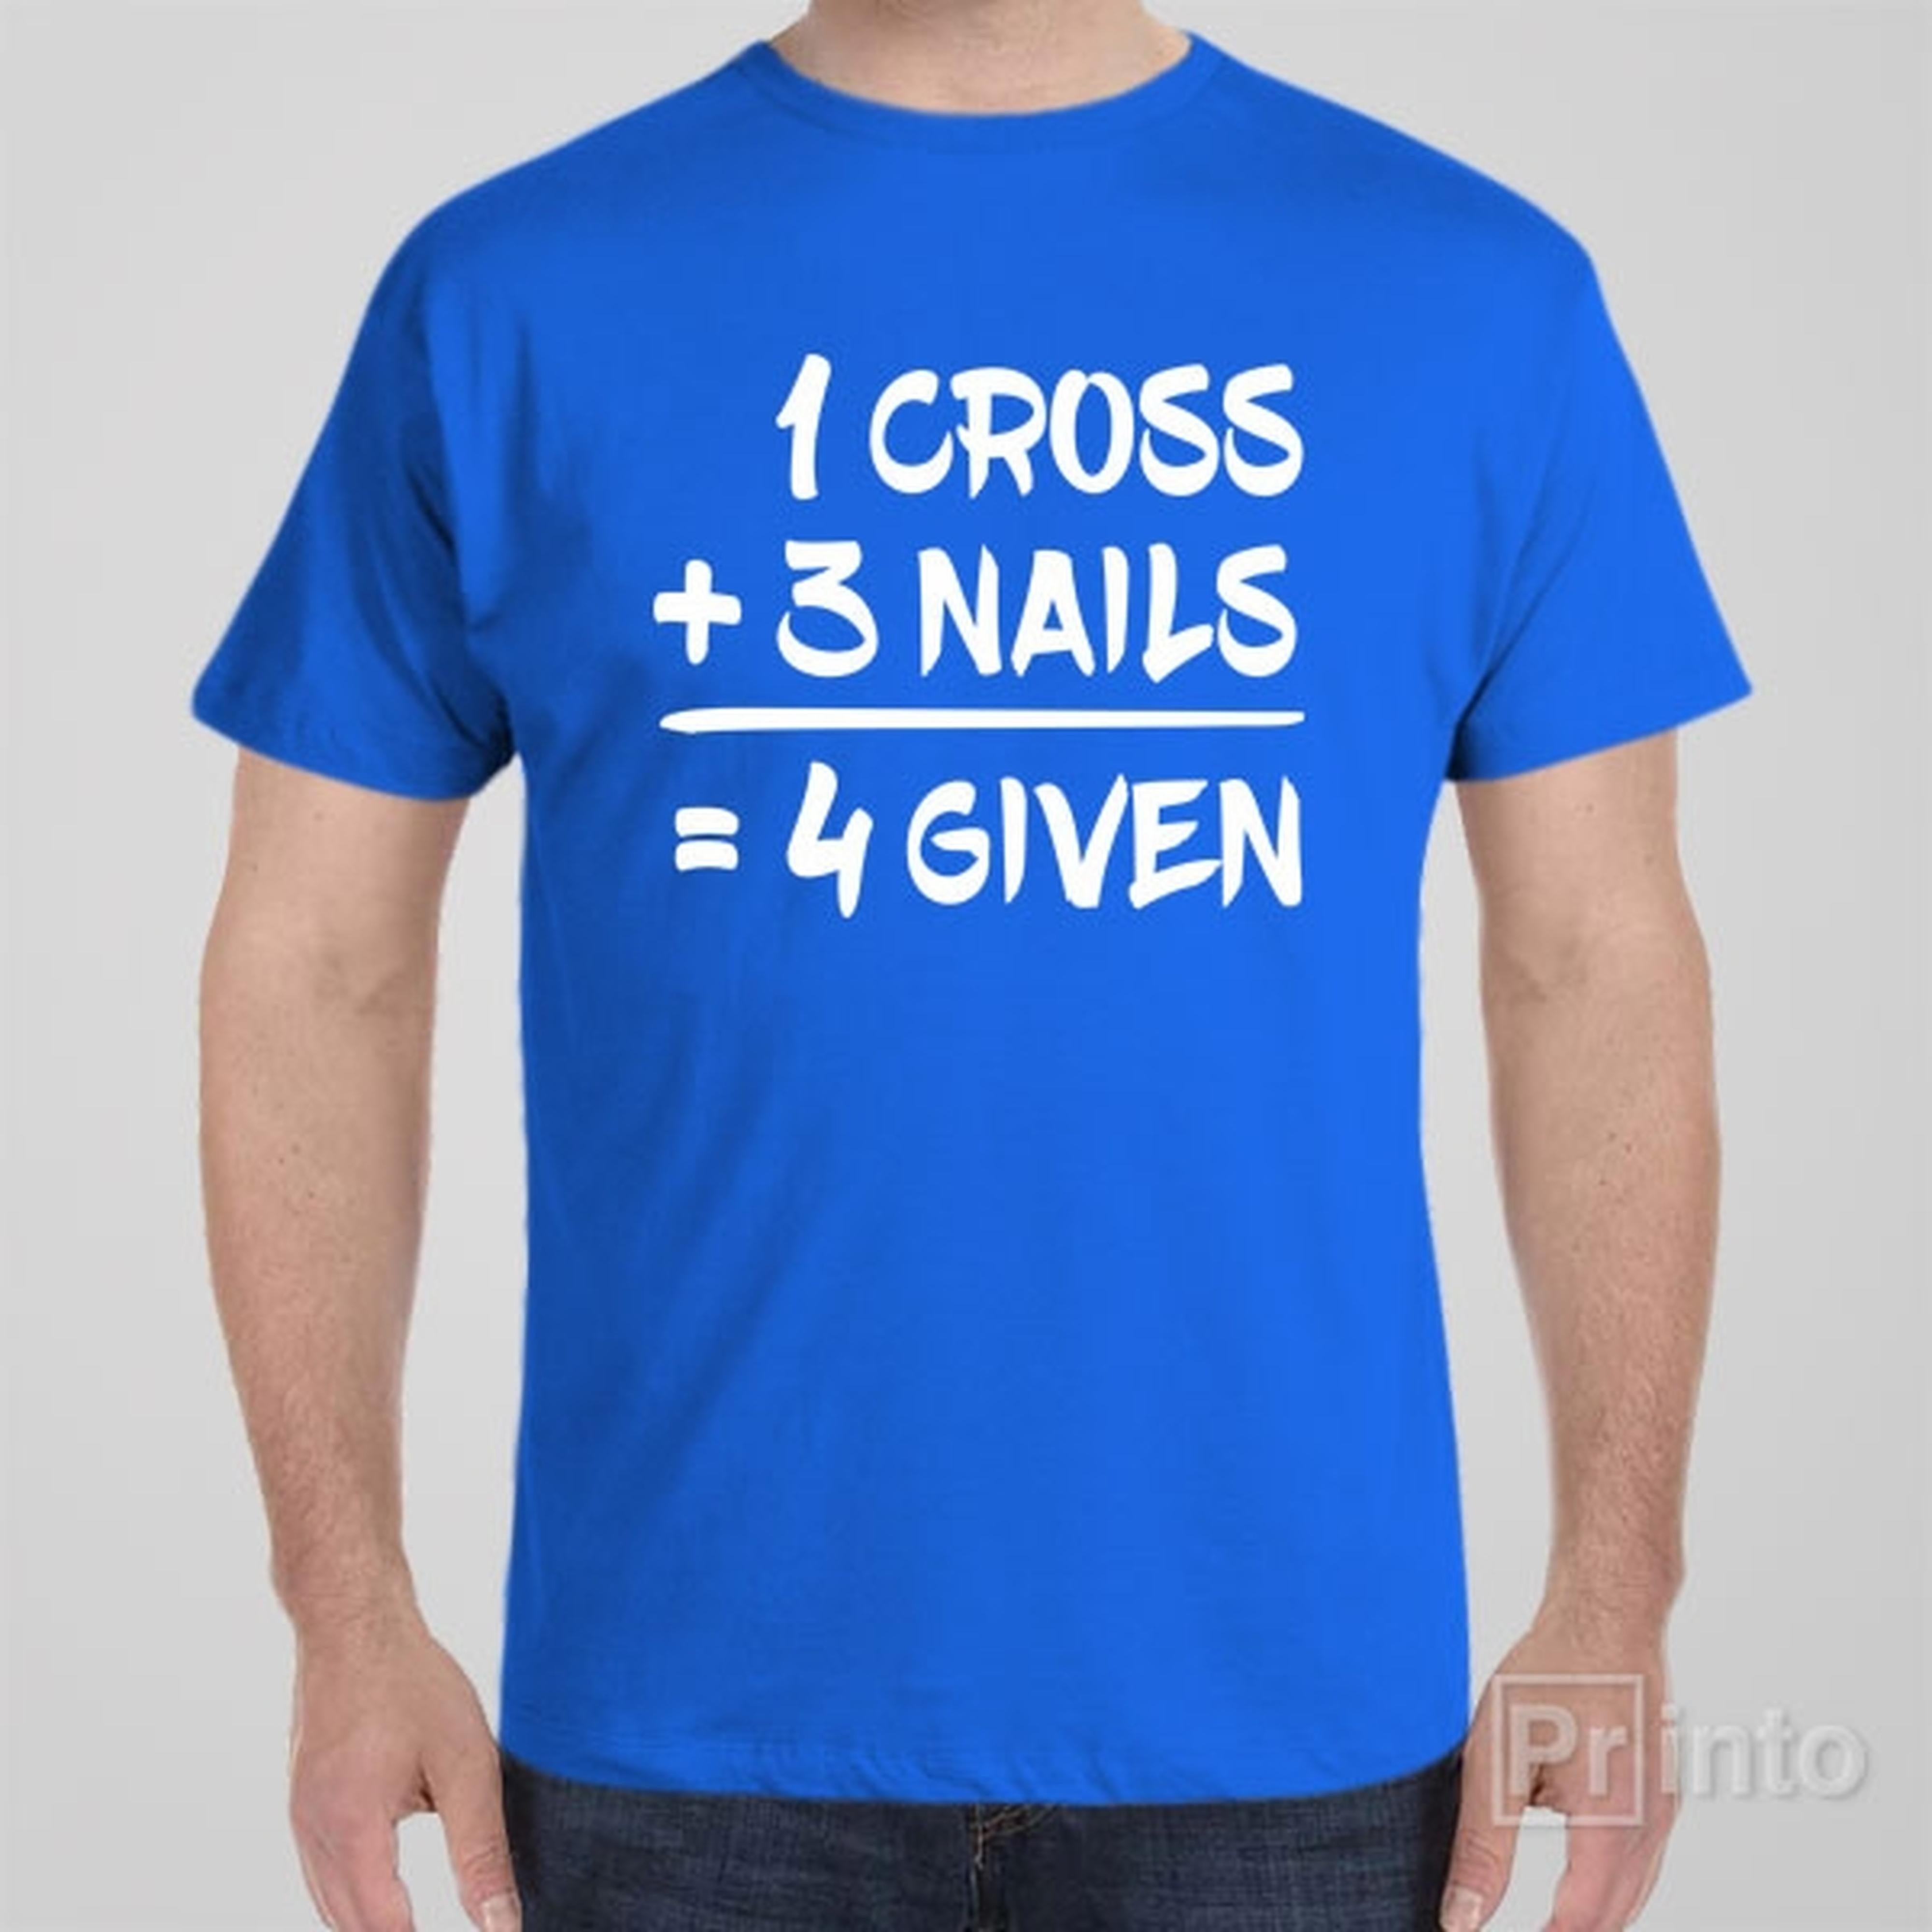 1-cross-3-nails-4given-t-shirt